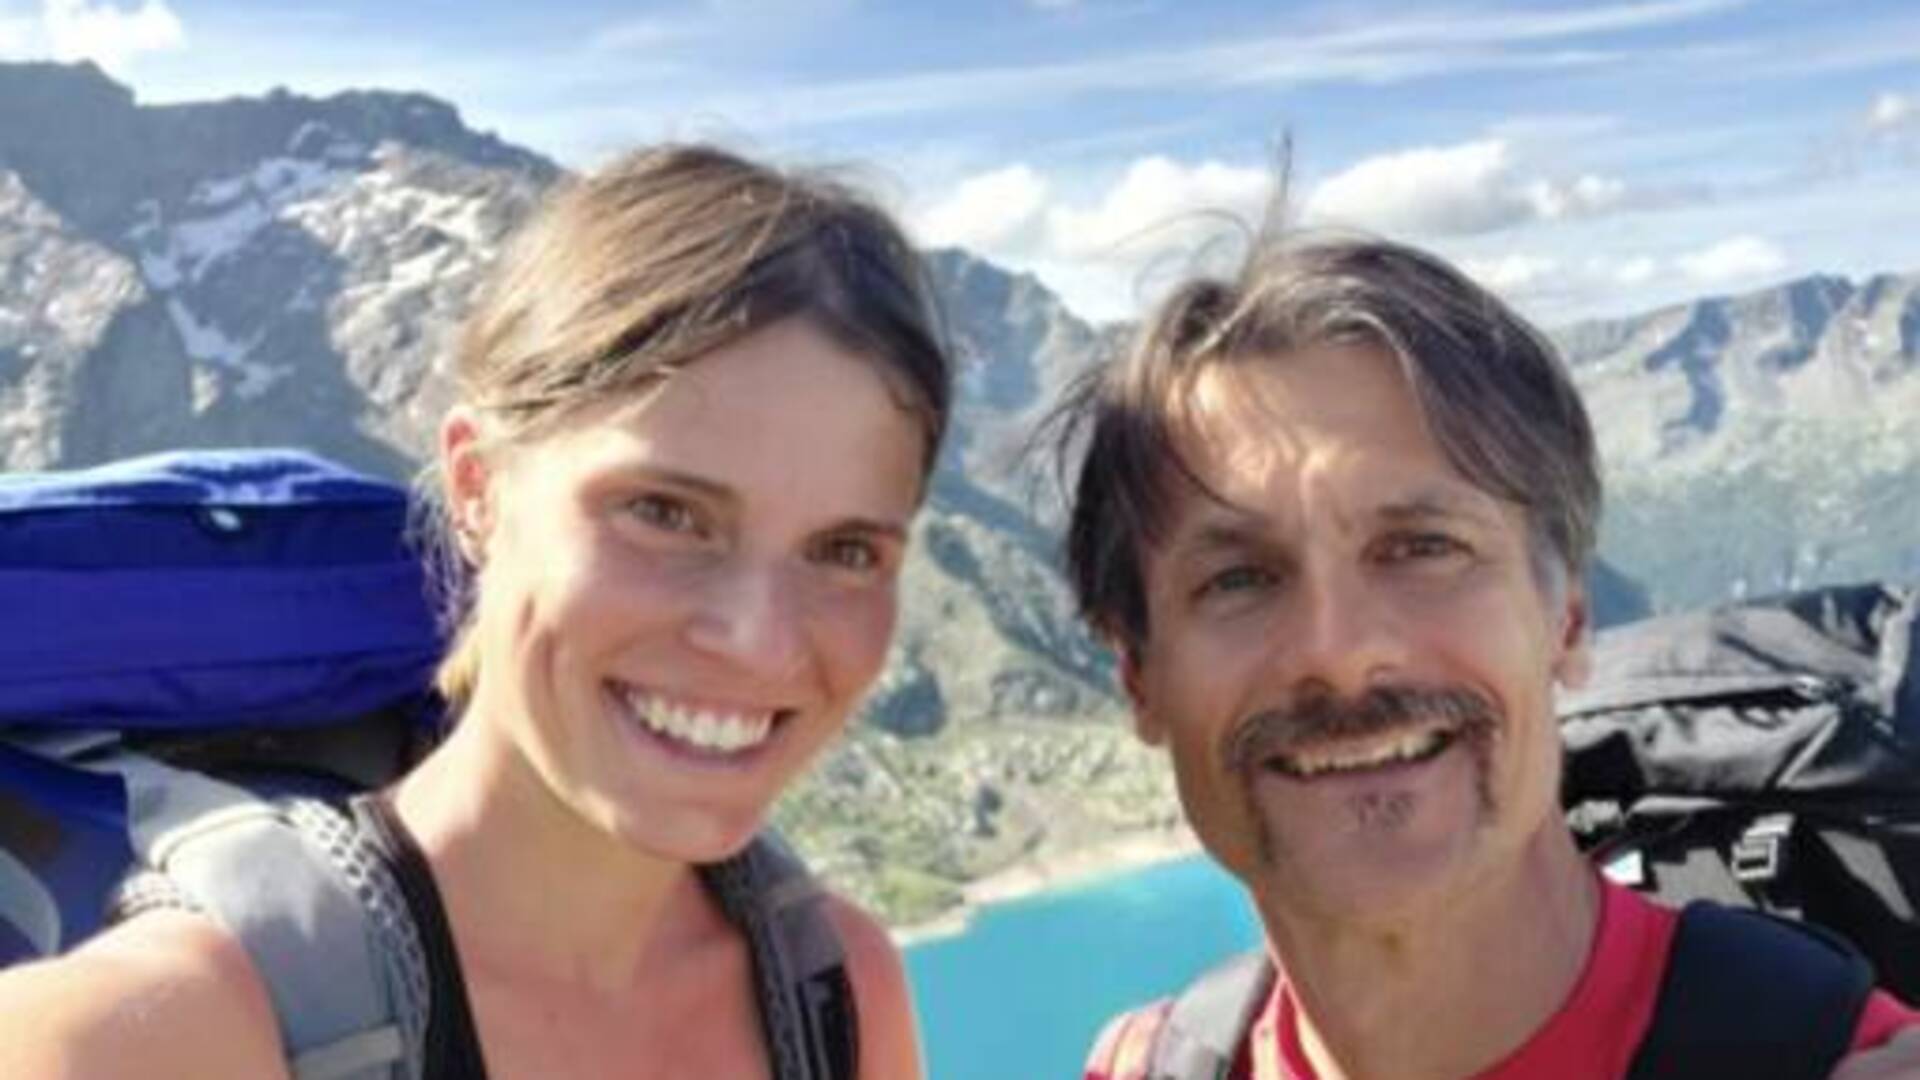 Valanga in Val Formazza: Vanessa Gatti e la passione per la montagna condivisa con Roberto Biancon